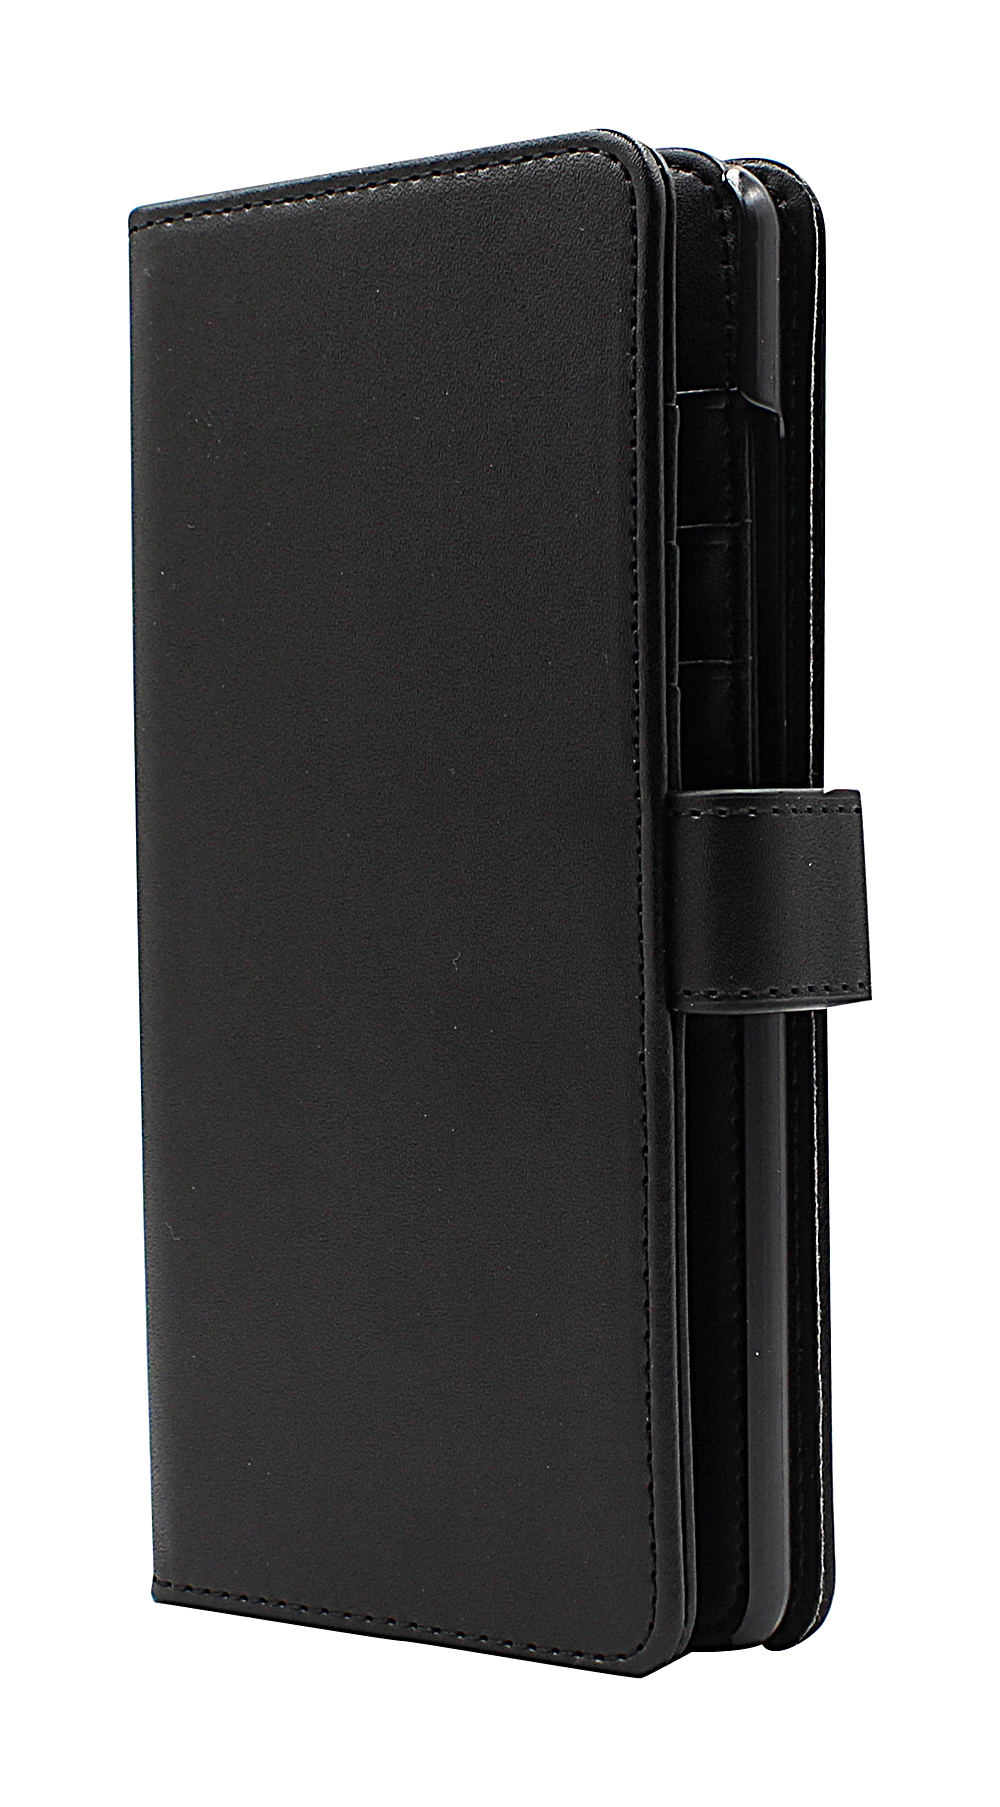 Skimblocker XL Wallet Samsung Galaxy A72 (A725F/DS)